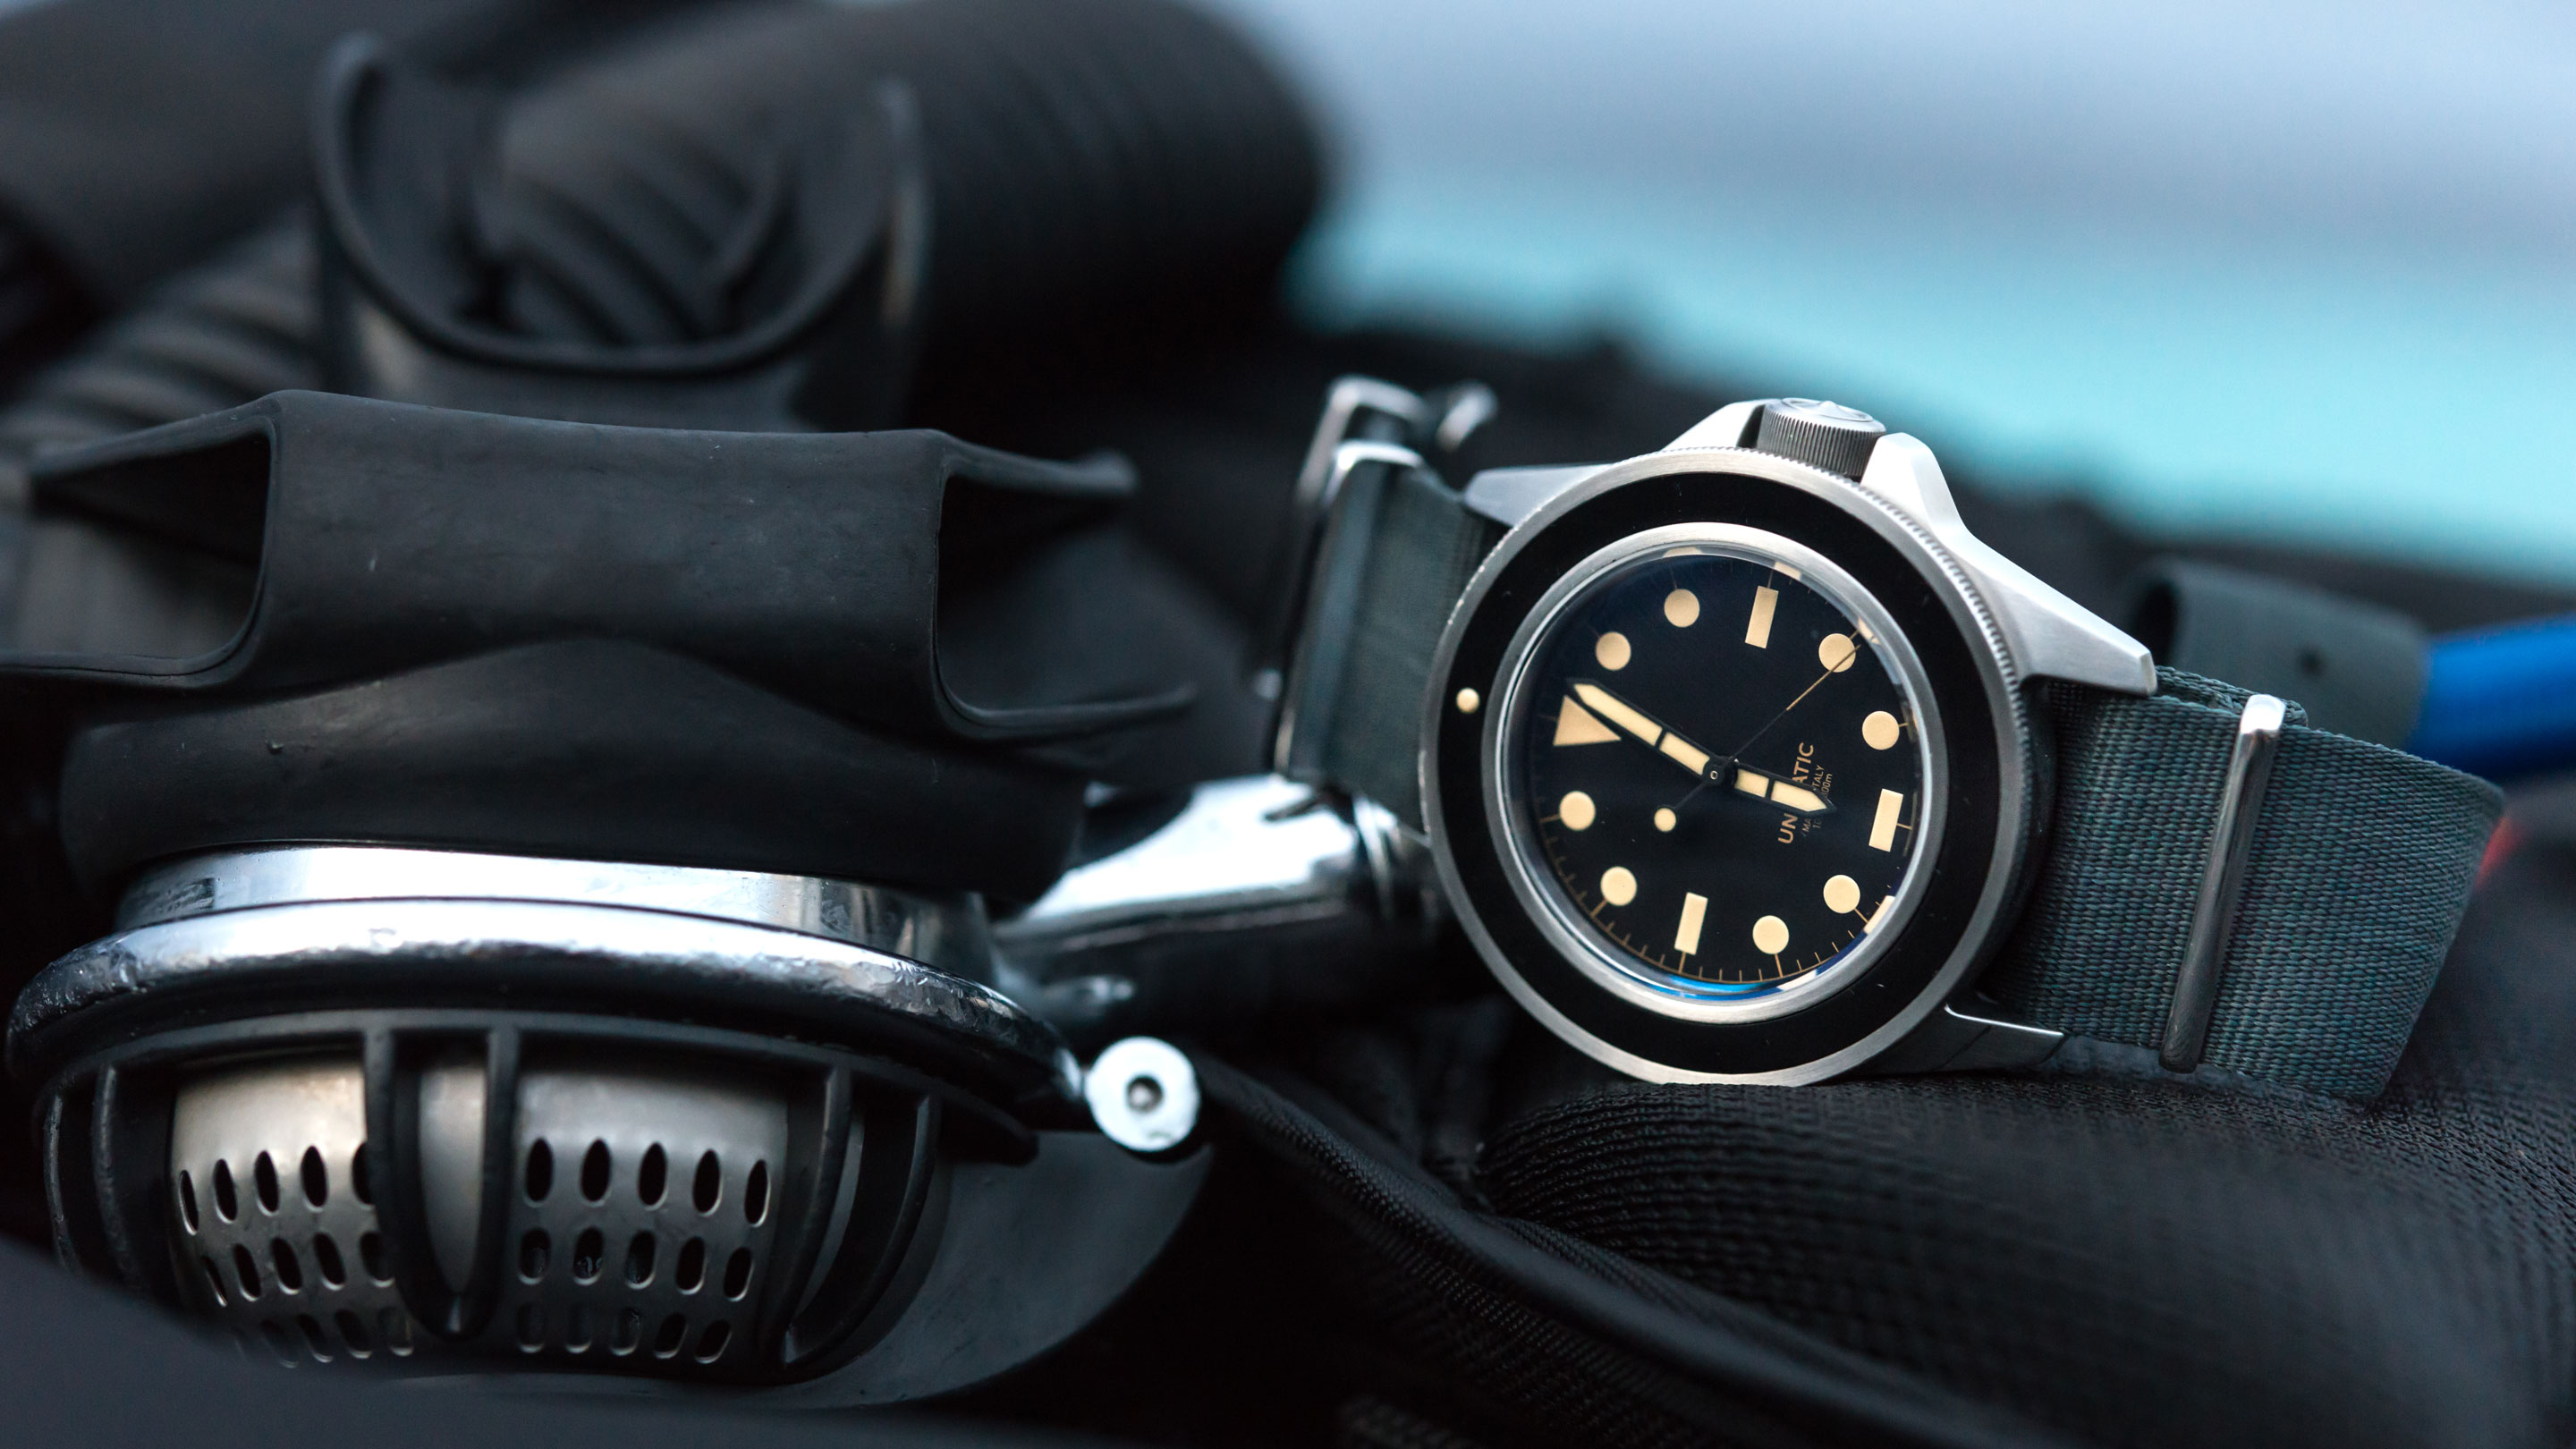 Hands-On: The Unimatic Modello Uno (U1-B), A Minimalist Dive Watch 